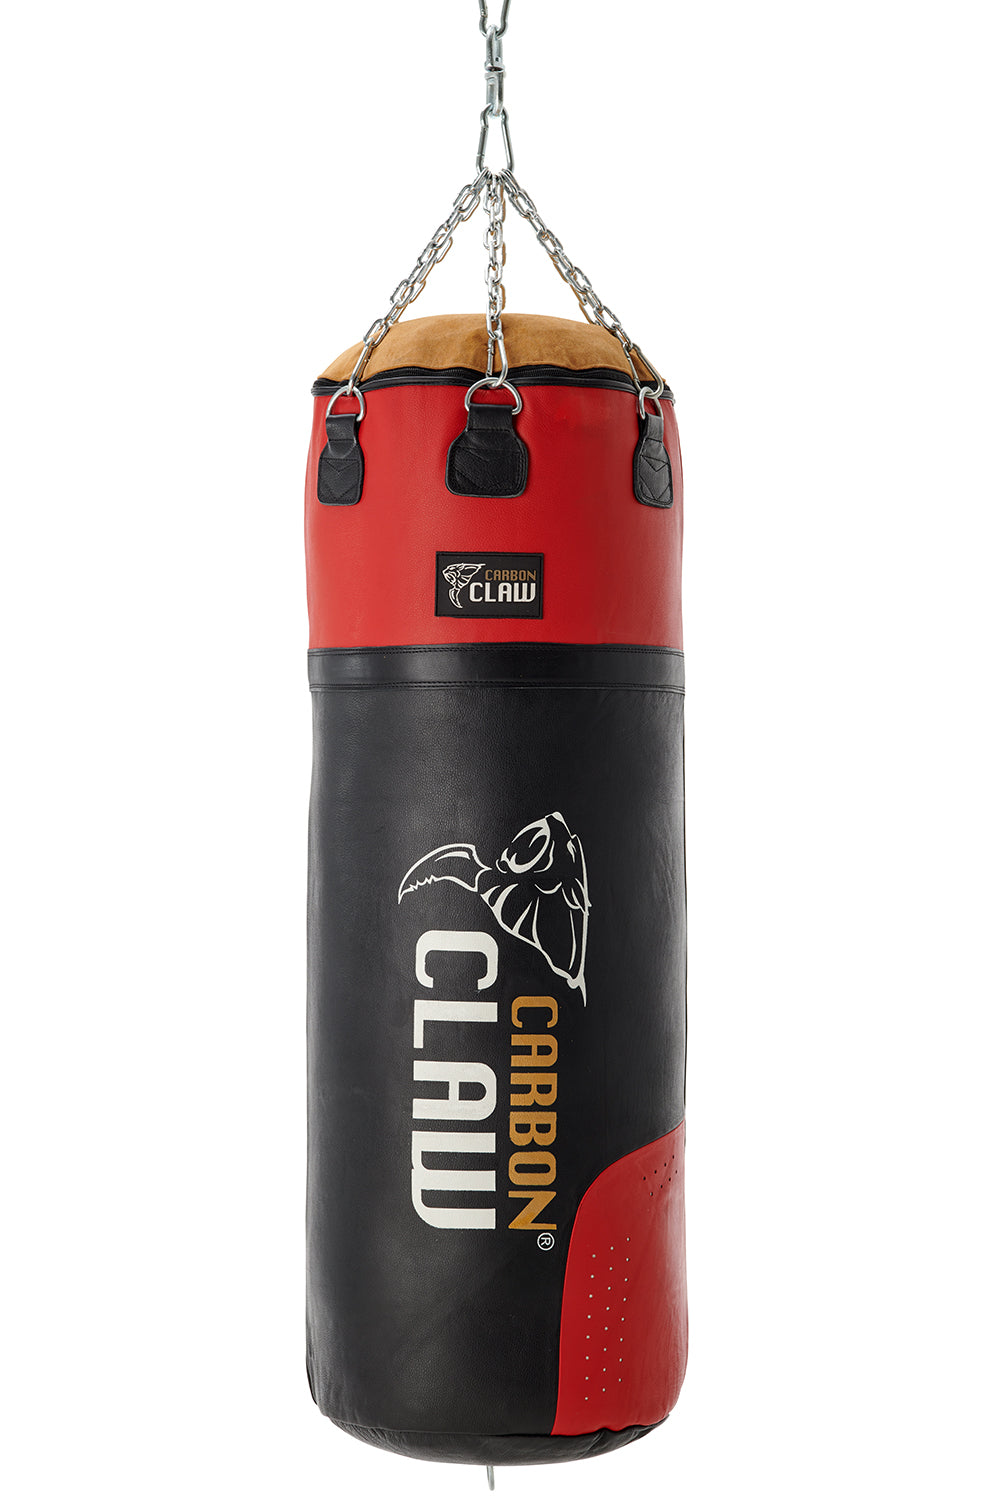 Carbon Claw Pro X-ILD Super Heavy 4ft Punch Bag